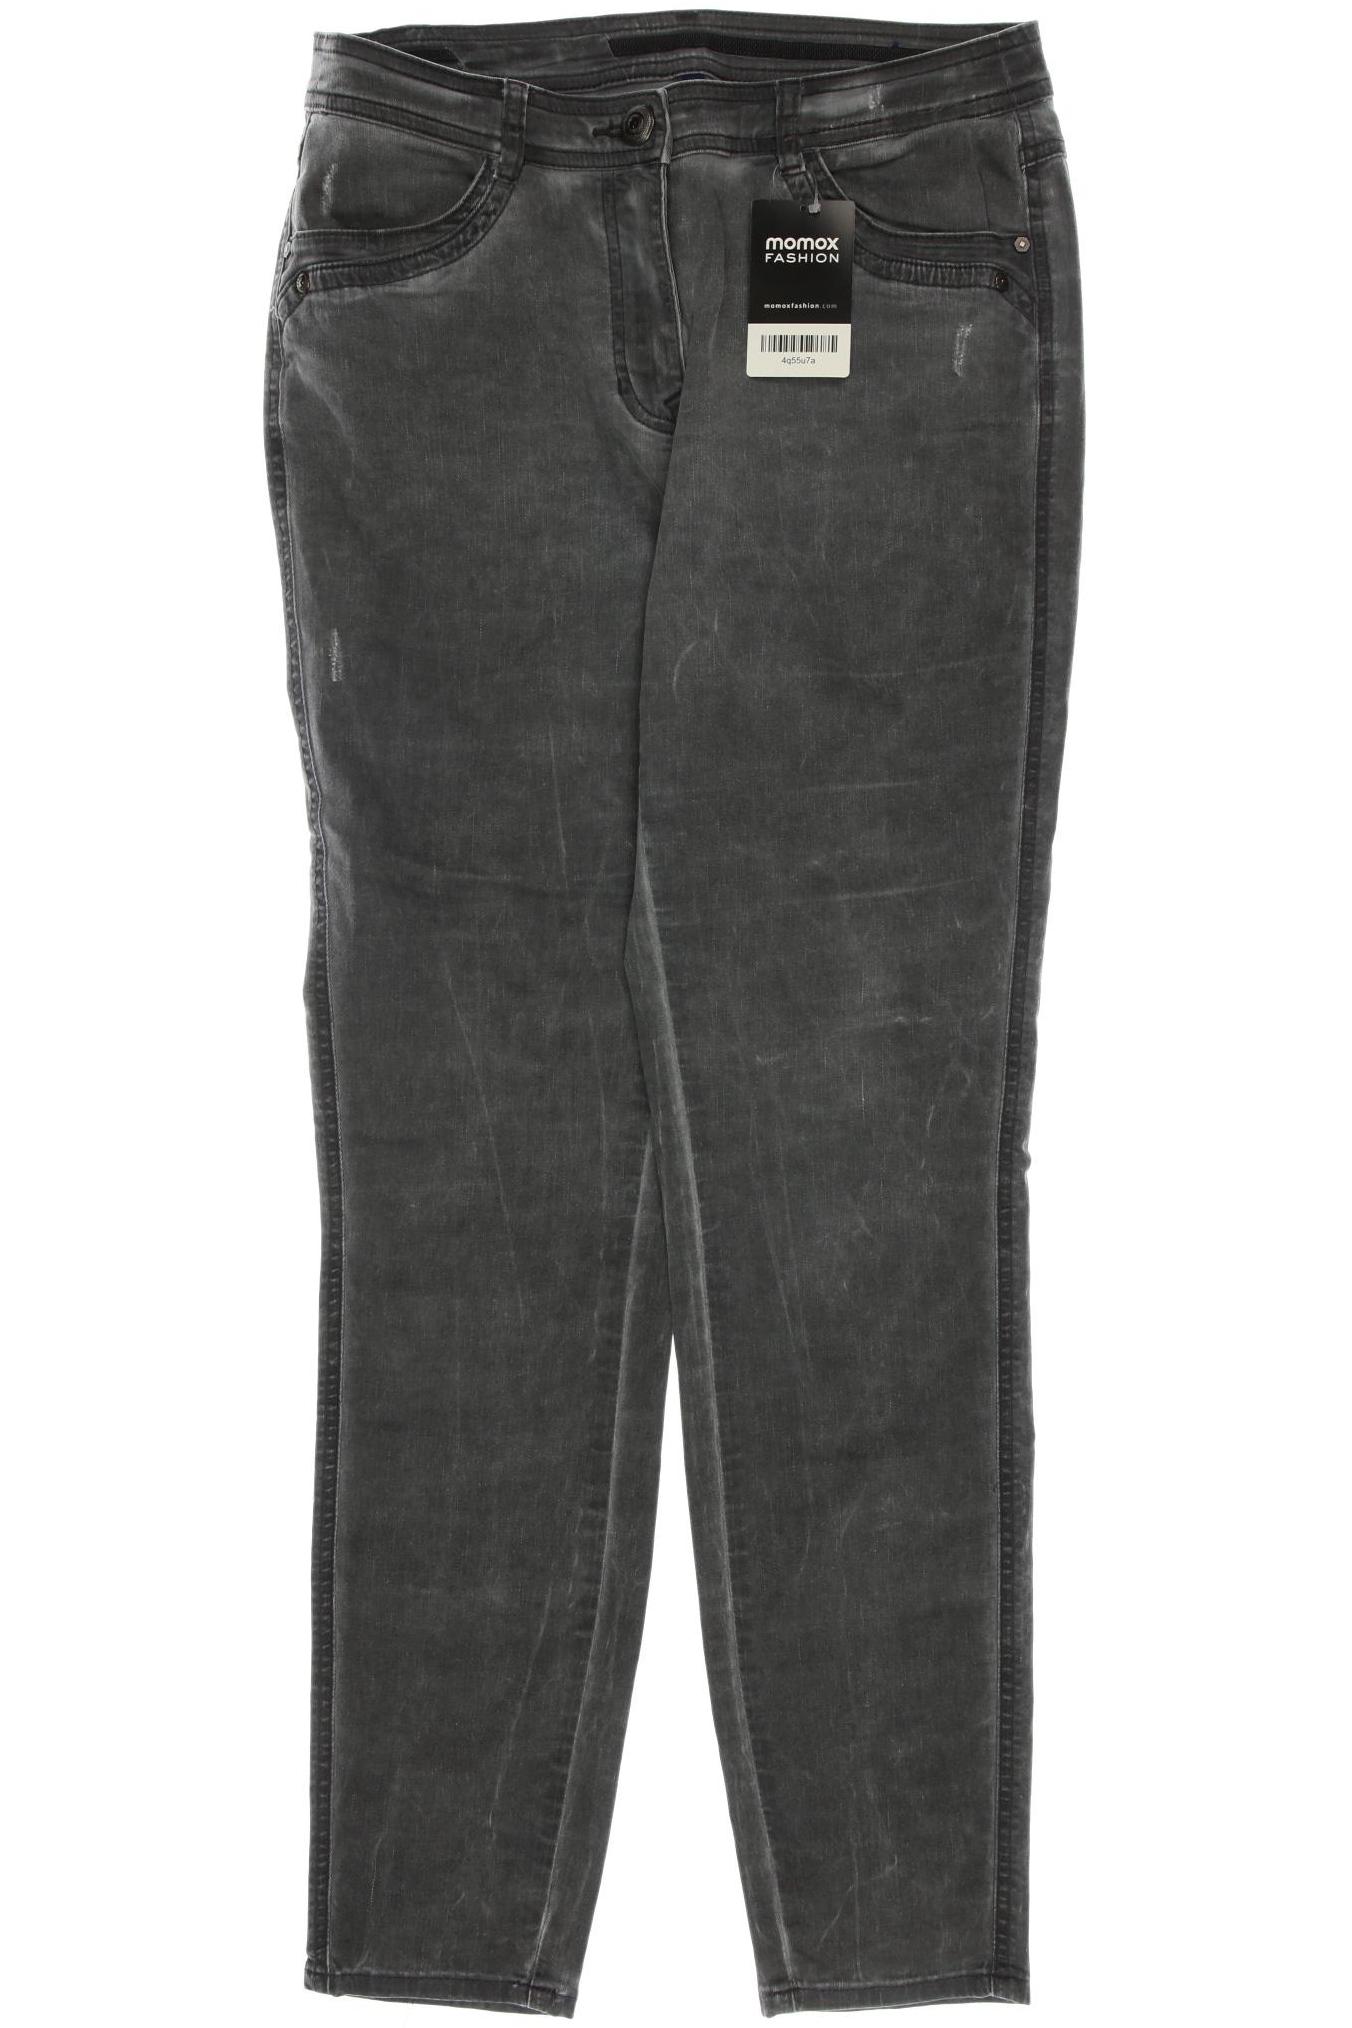 Cecil Damen Jeans, grau, Gr. 40 von cecil